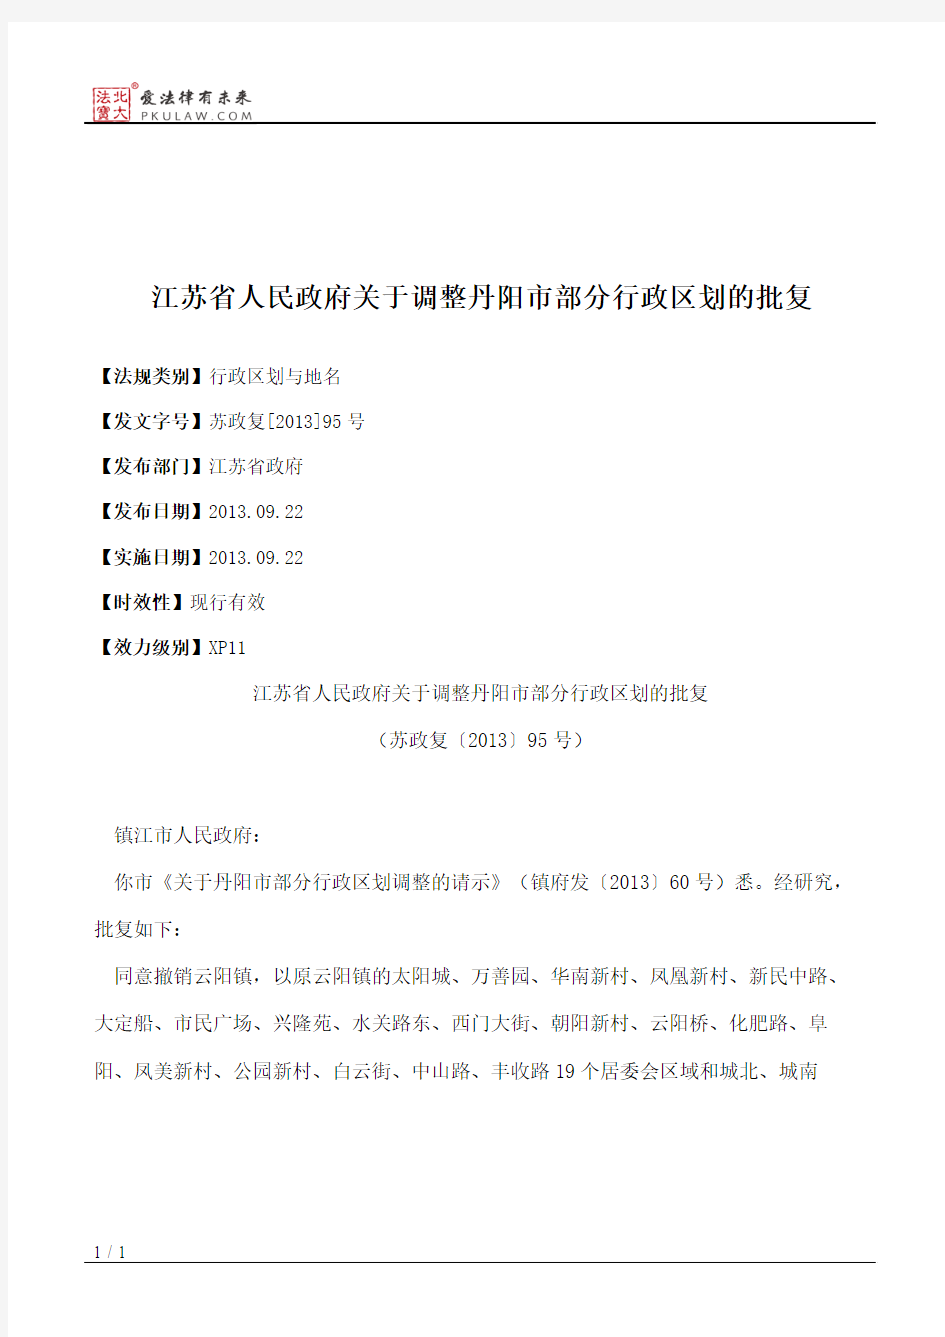 江苏省人民政府关于调整丹阳市部分行政区划的批复